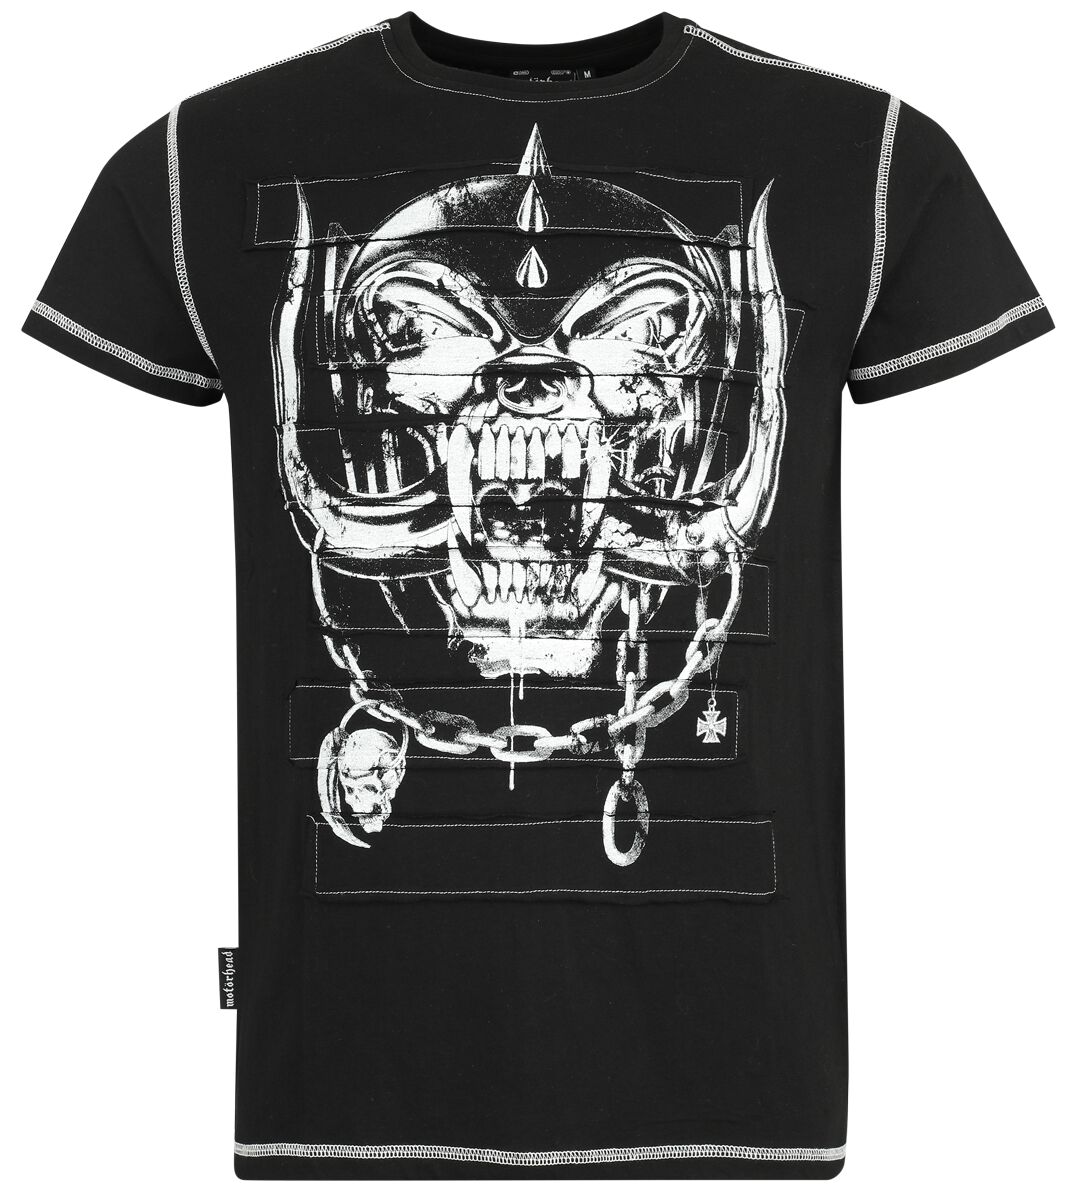 Motörhead T-Shirt - EMP Signature Collection - S bis 3XL - für Männer - Größe 3XL - schwarz  - Lizenziertes Merchandise!